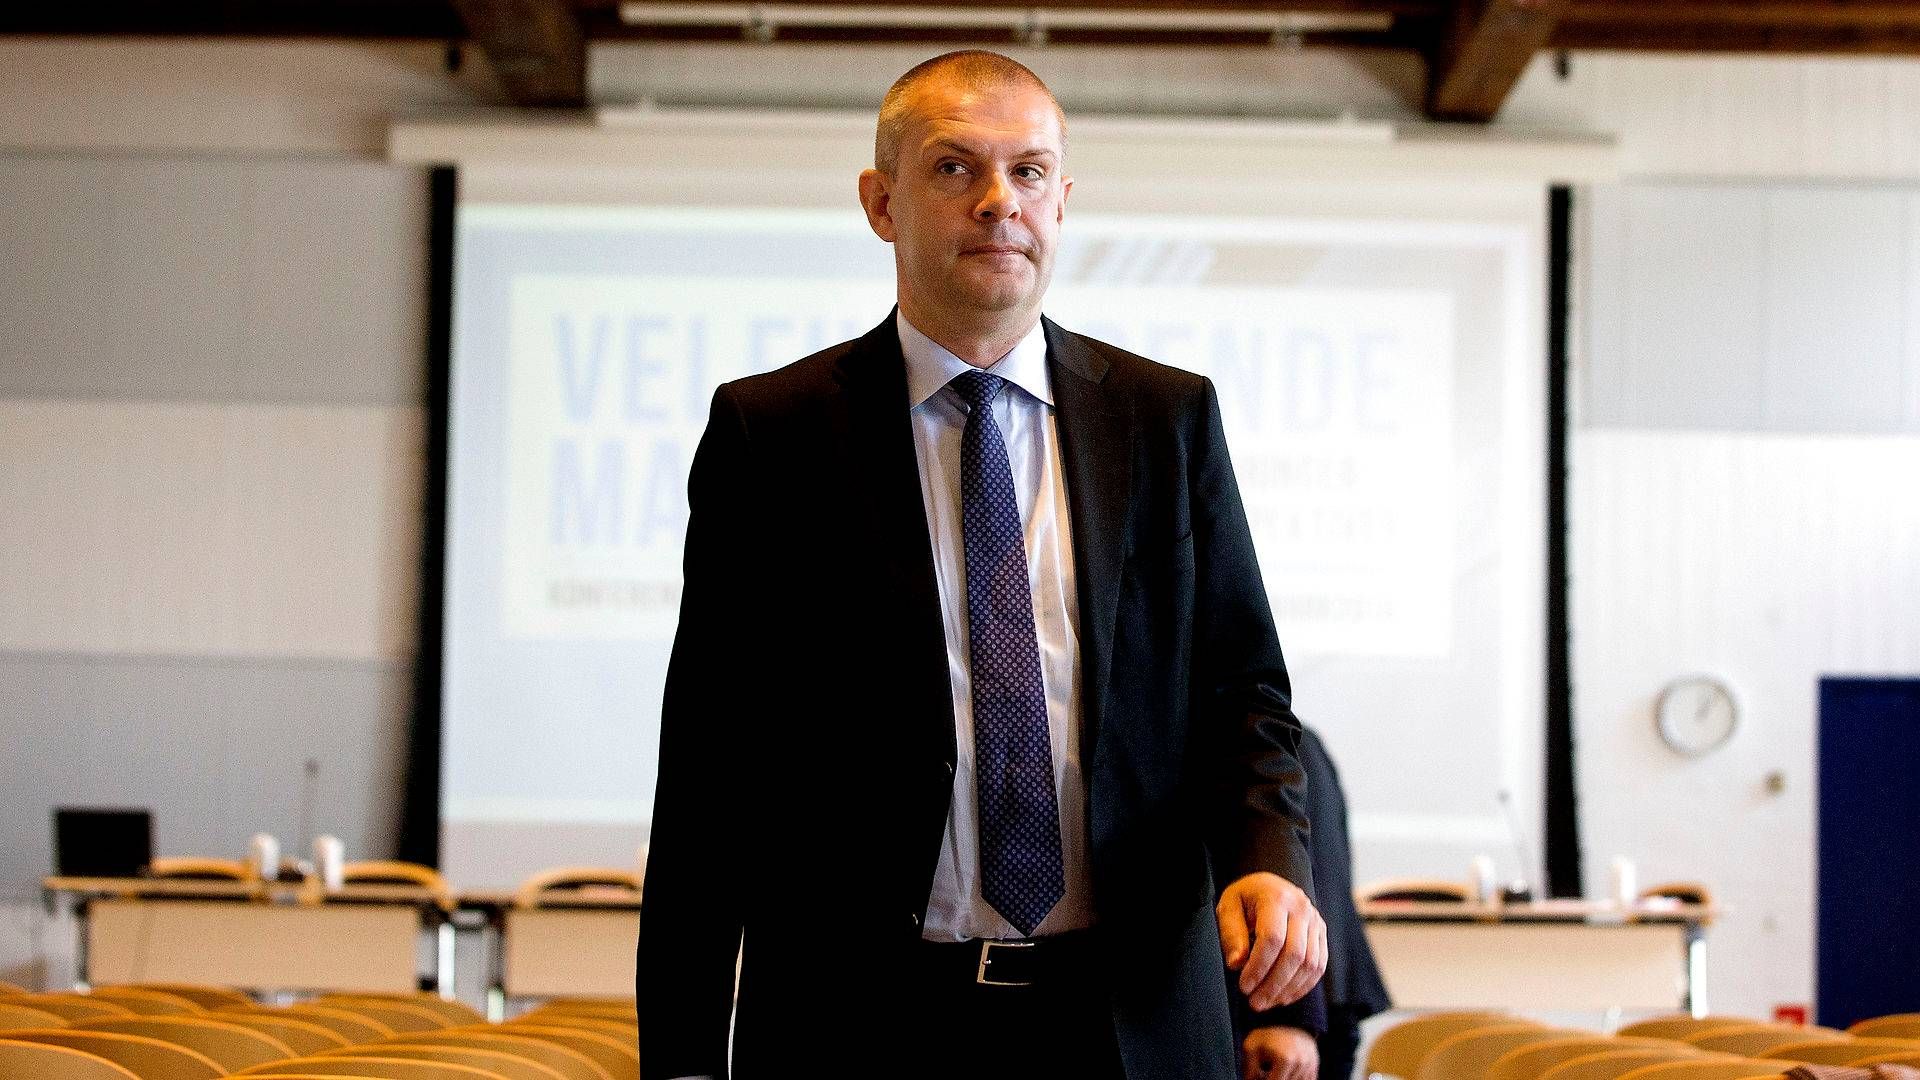 Direktør og chefredaktør på Børsen, Bjarne Corydon kom til erhvervsavisen i januar 2018. | Foto: Finn Frandsen/Politiken/Ritzau Scanpix